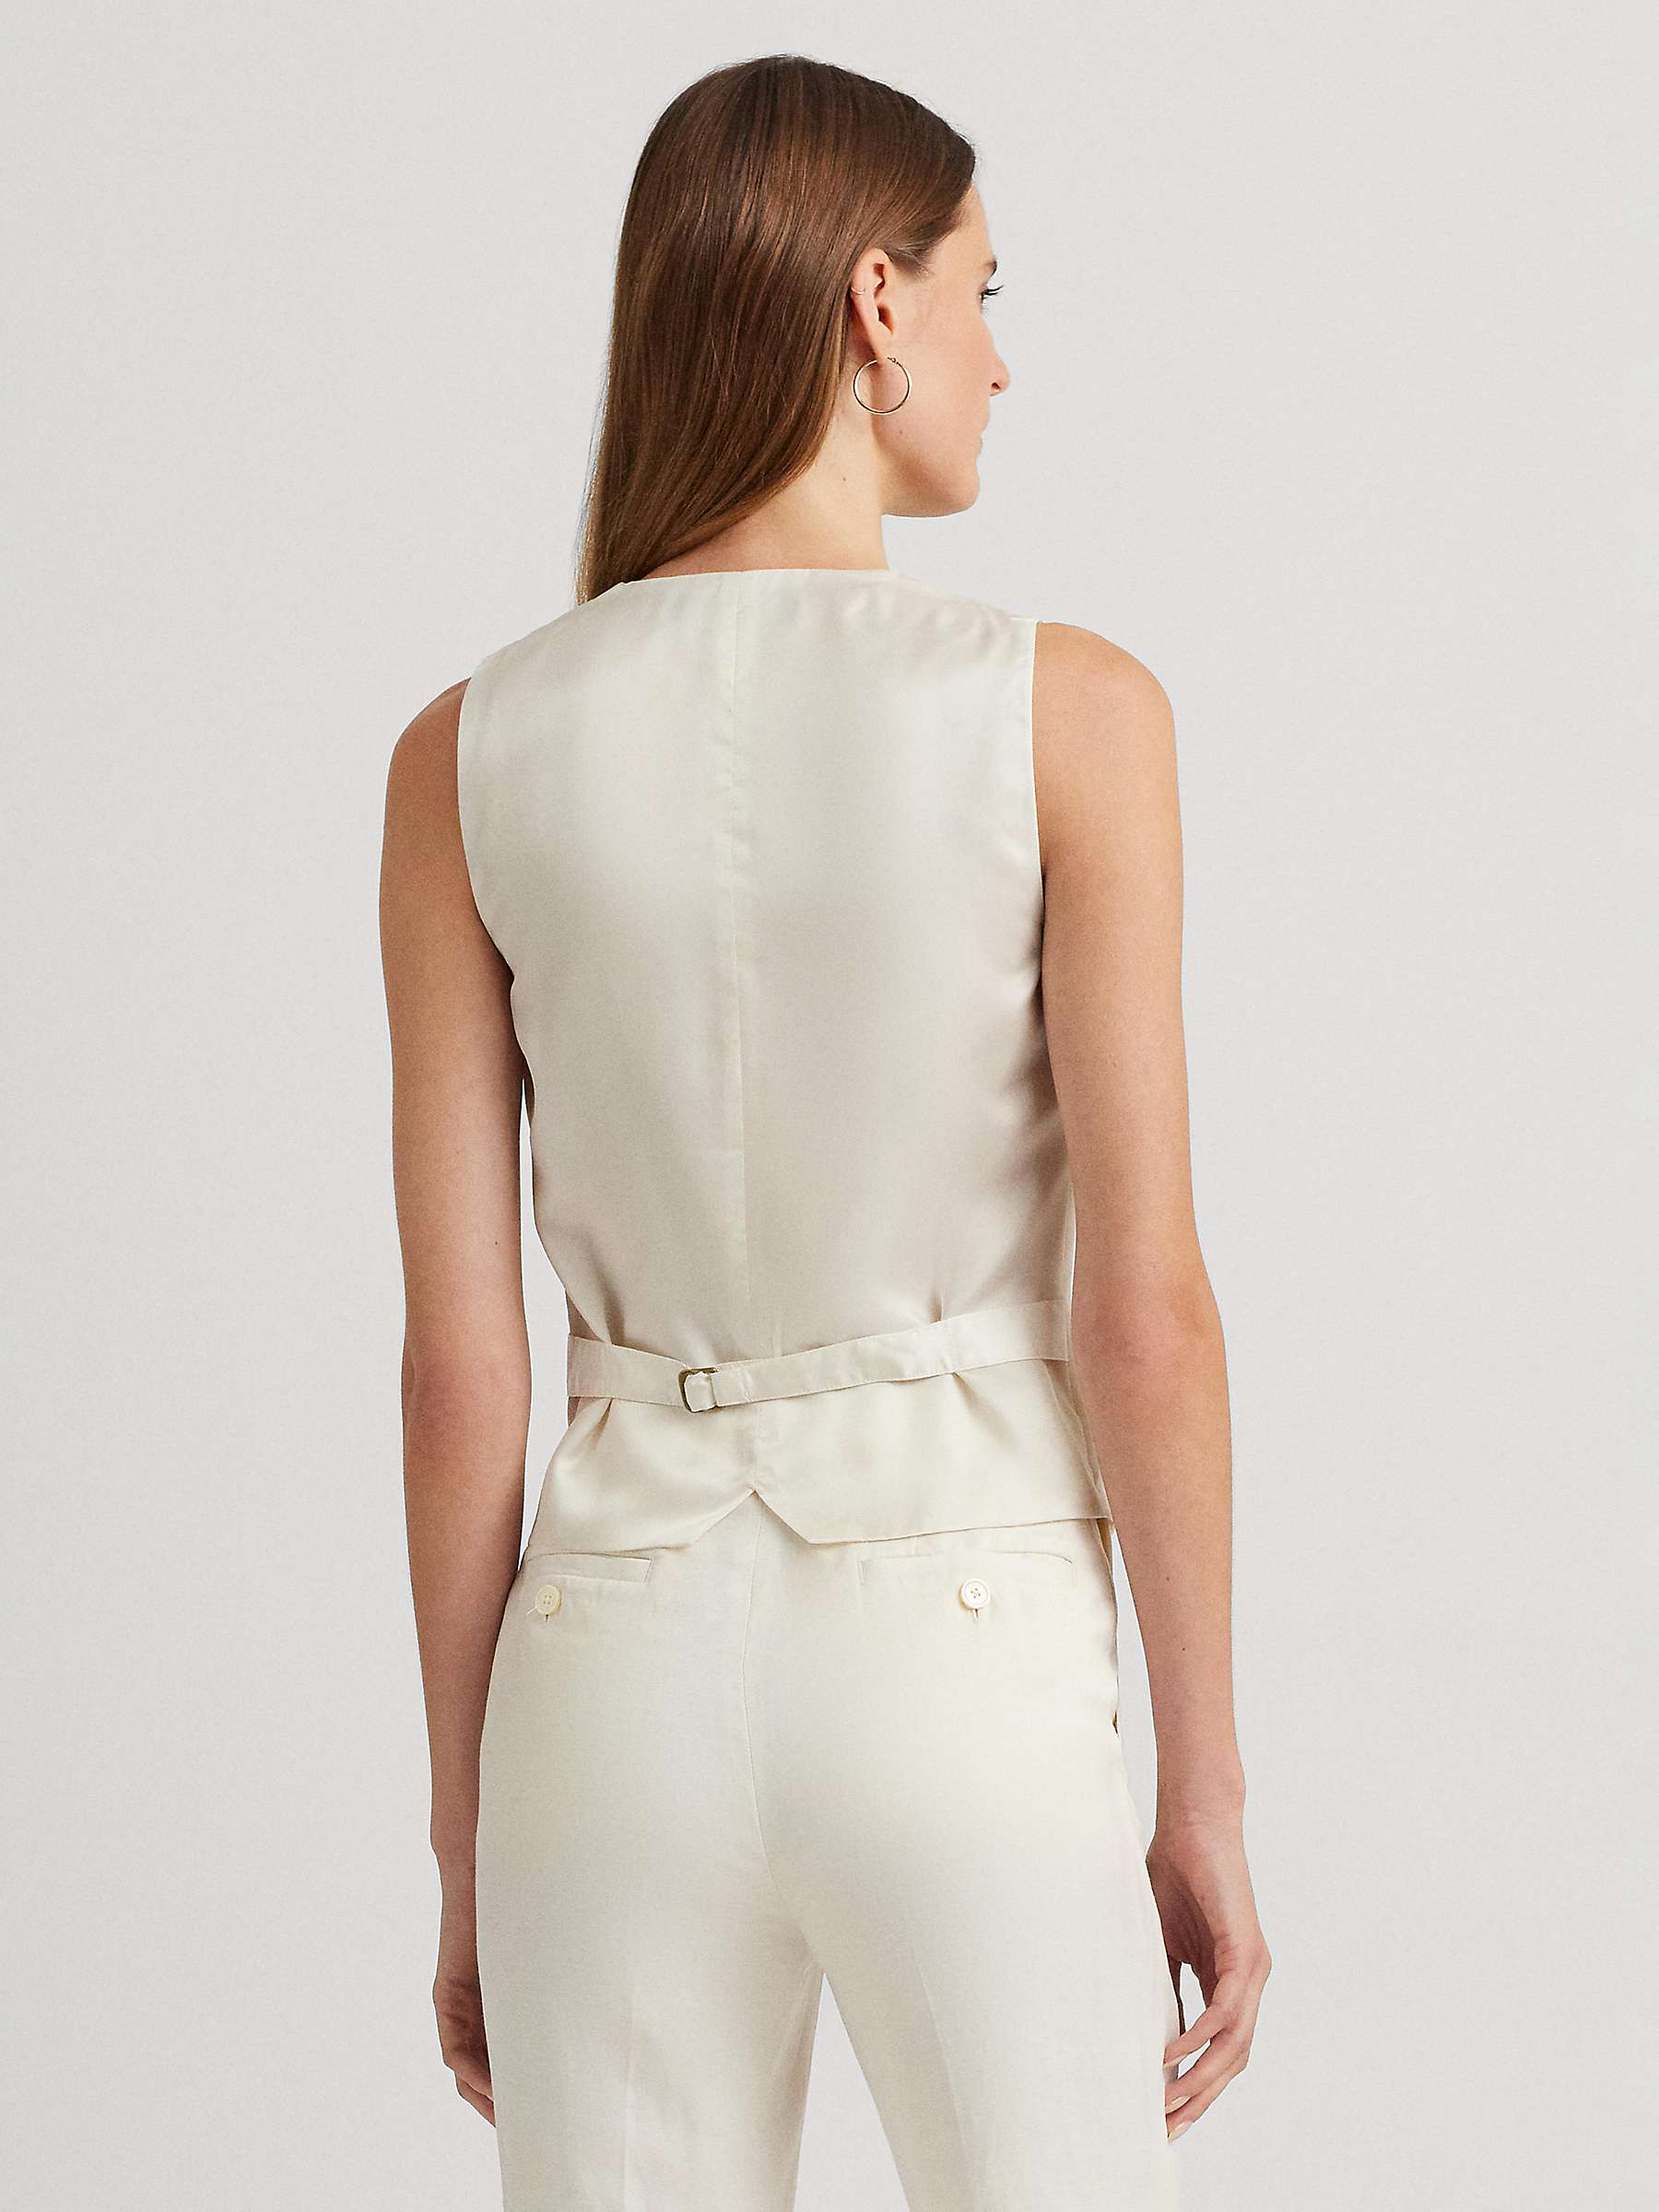 Buy Lauren Ralph Lauren Linen Blend Twill Vest, Natural Cream Online at johnlewis.com